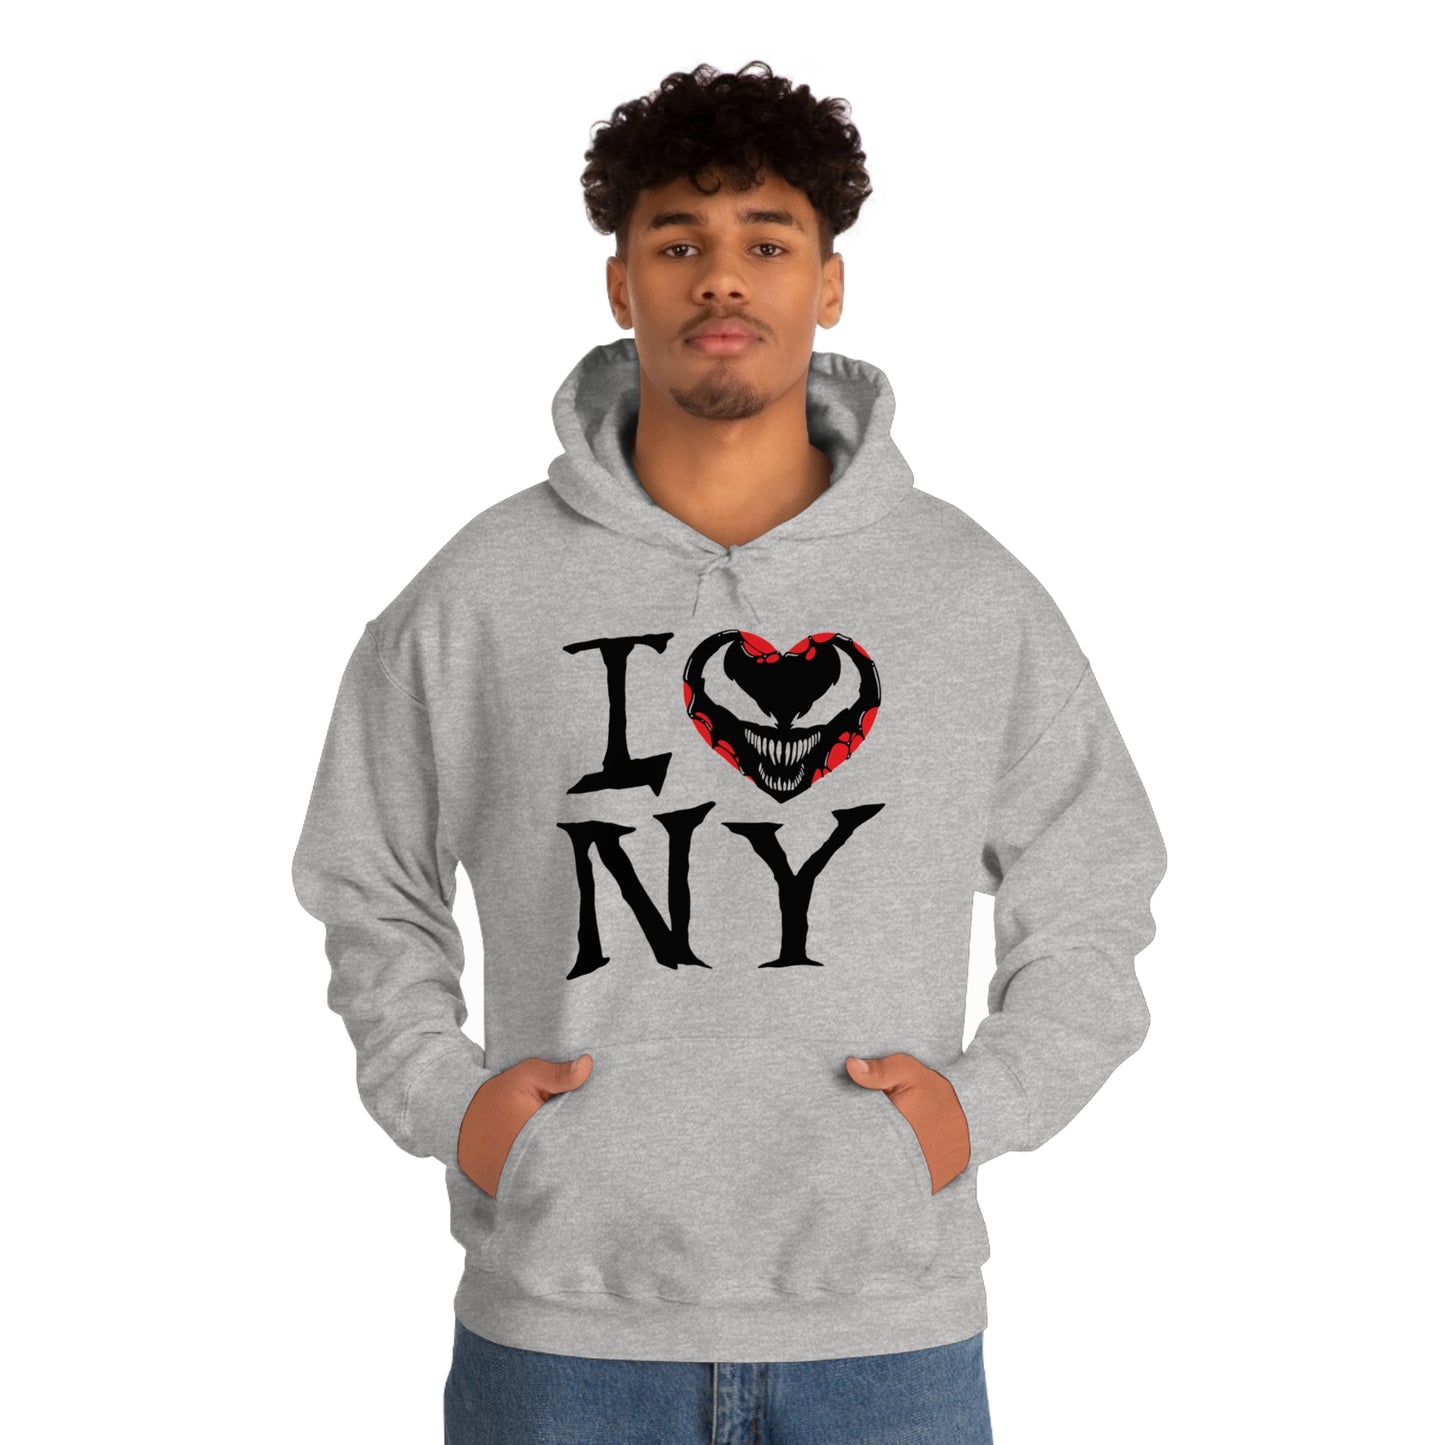 I Symbiote NY hooded sweatshirt